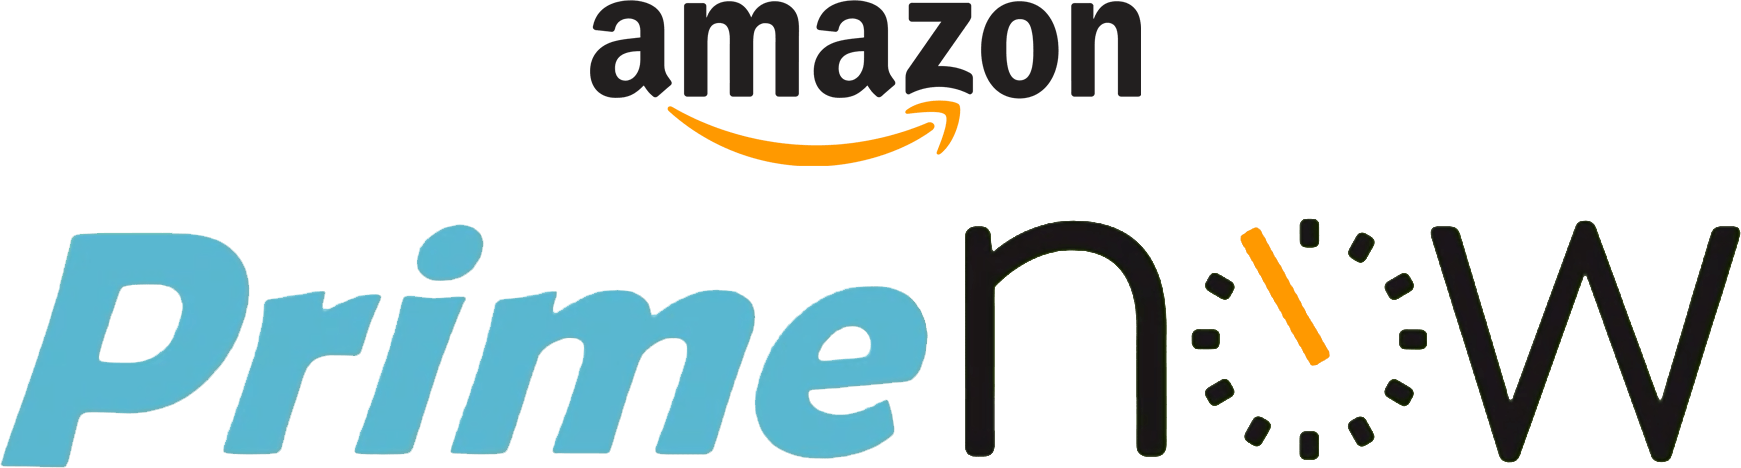 Amazon Prime Now Logo - Amazon Prime Now | Logopedia | FANDOM powered by Wikia